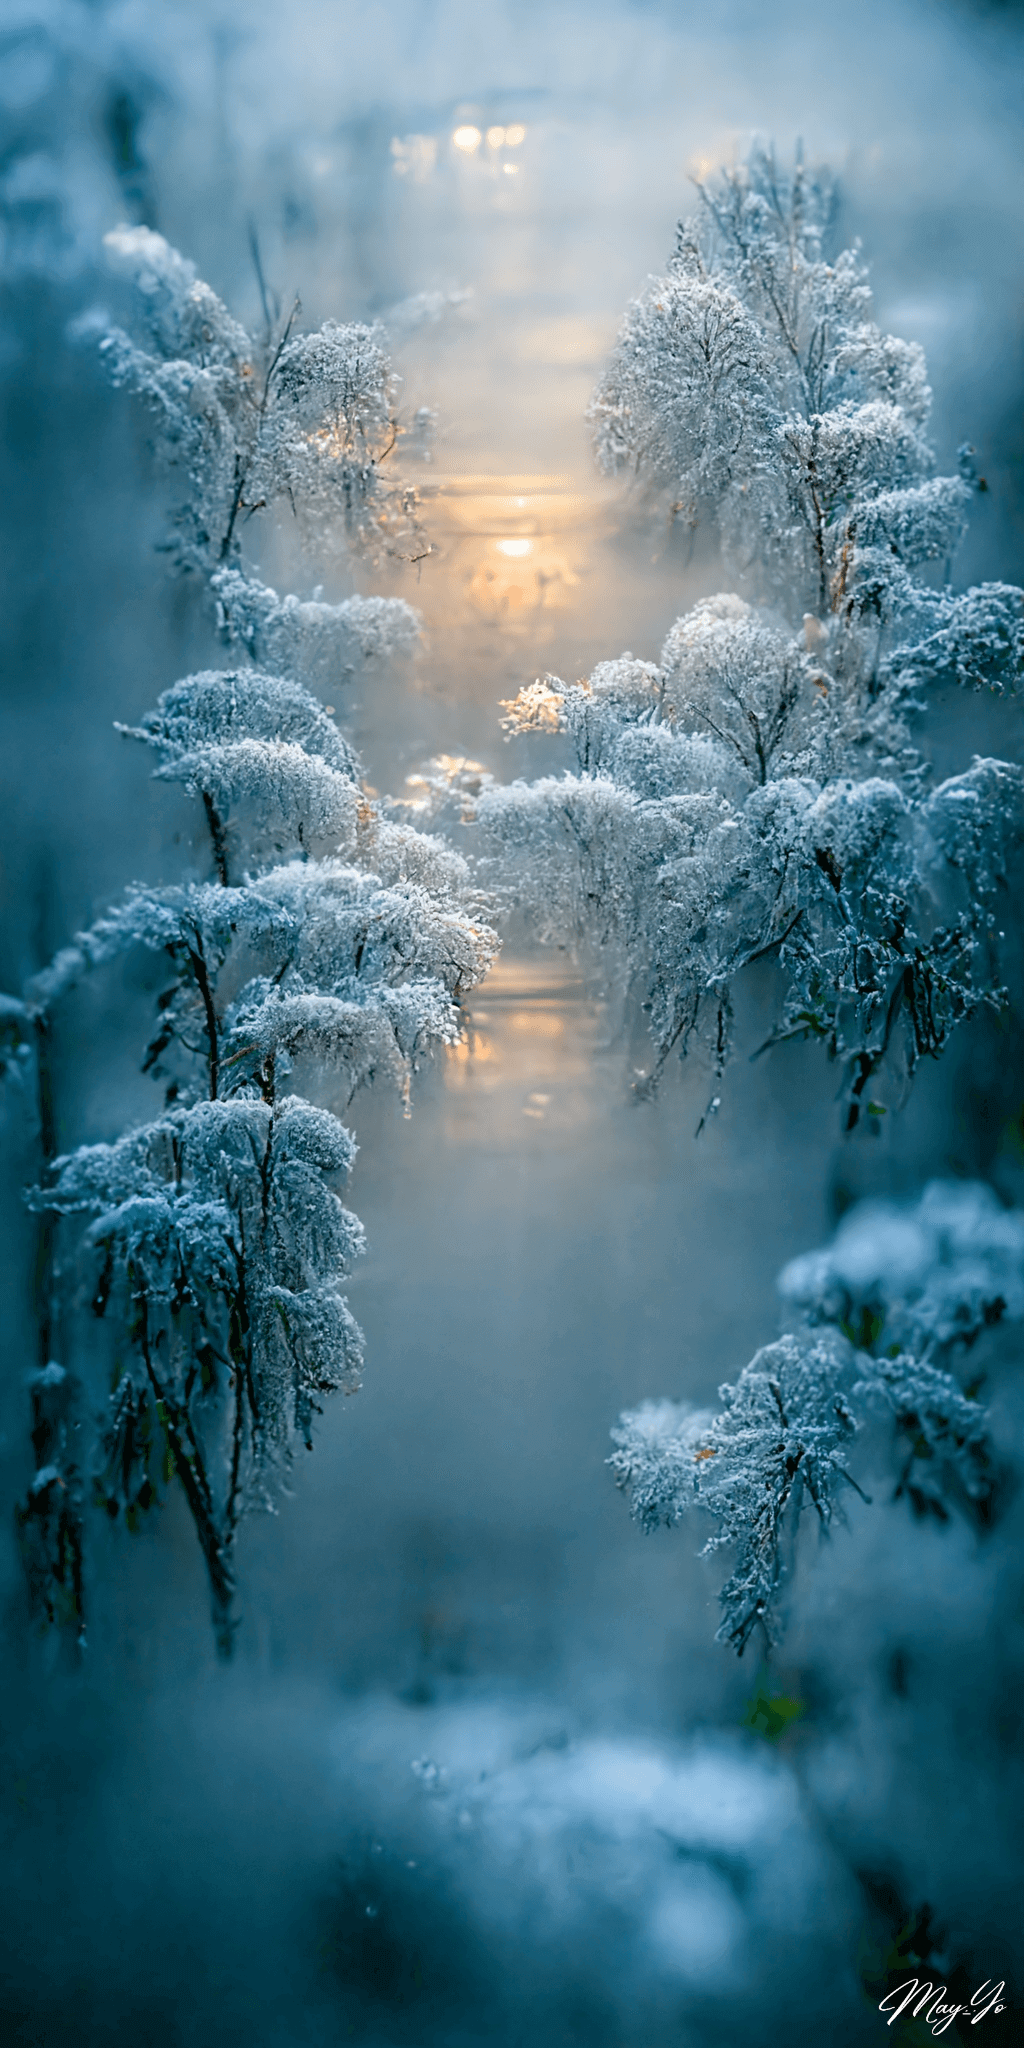 曇りガラスの向こうの冬の森の壁紙イラスト 雪化粧の森の朝のイラスト待受 AIイラスト待受 縦長画像 snowy forest fiction art frostedglass